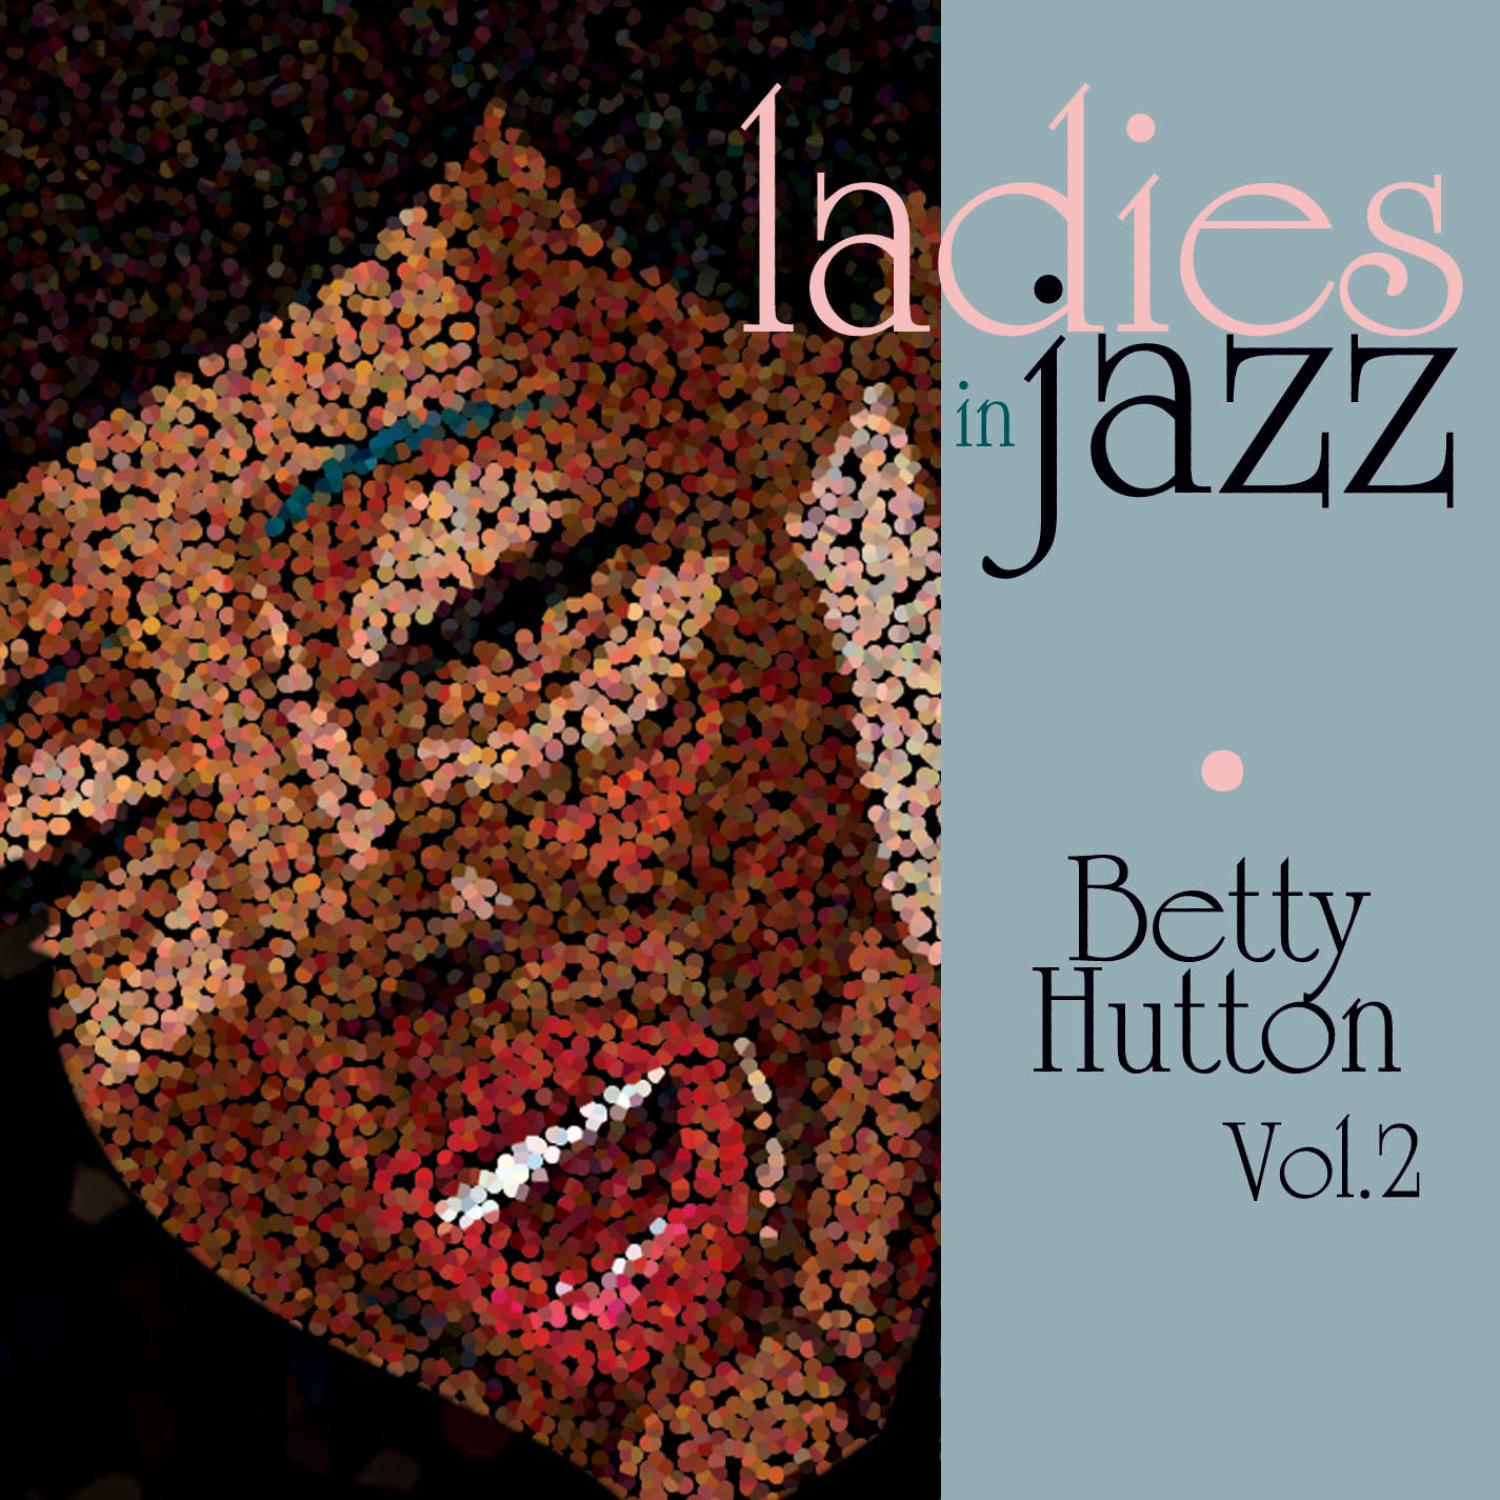 Ladies in Jazz - Betty Hutton Vol. 2